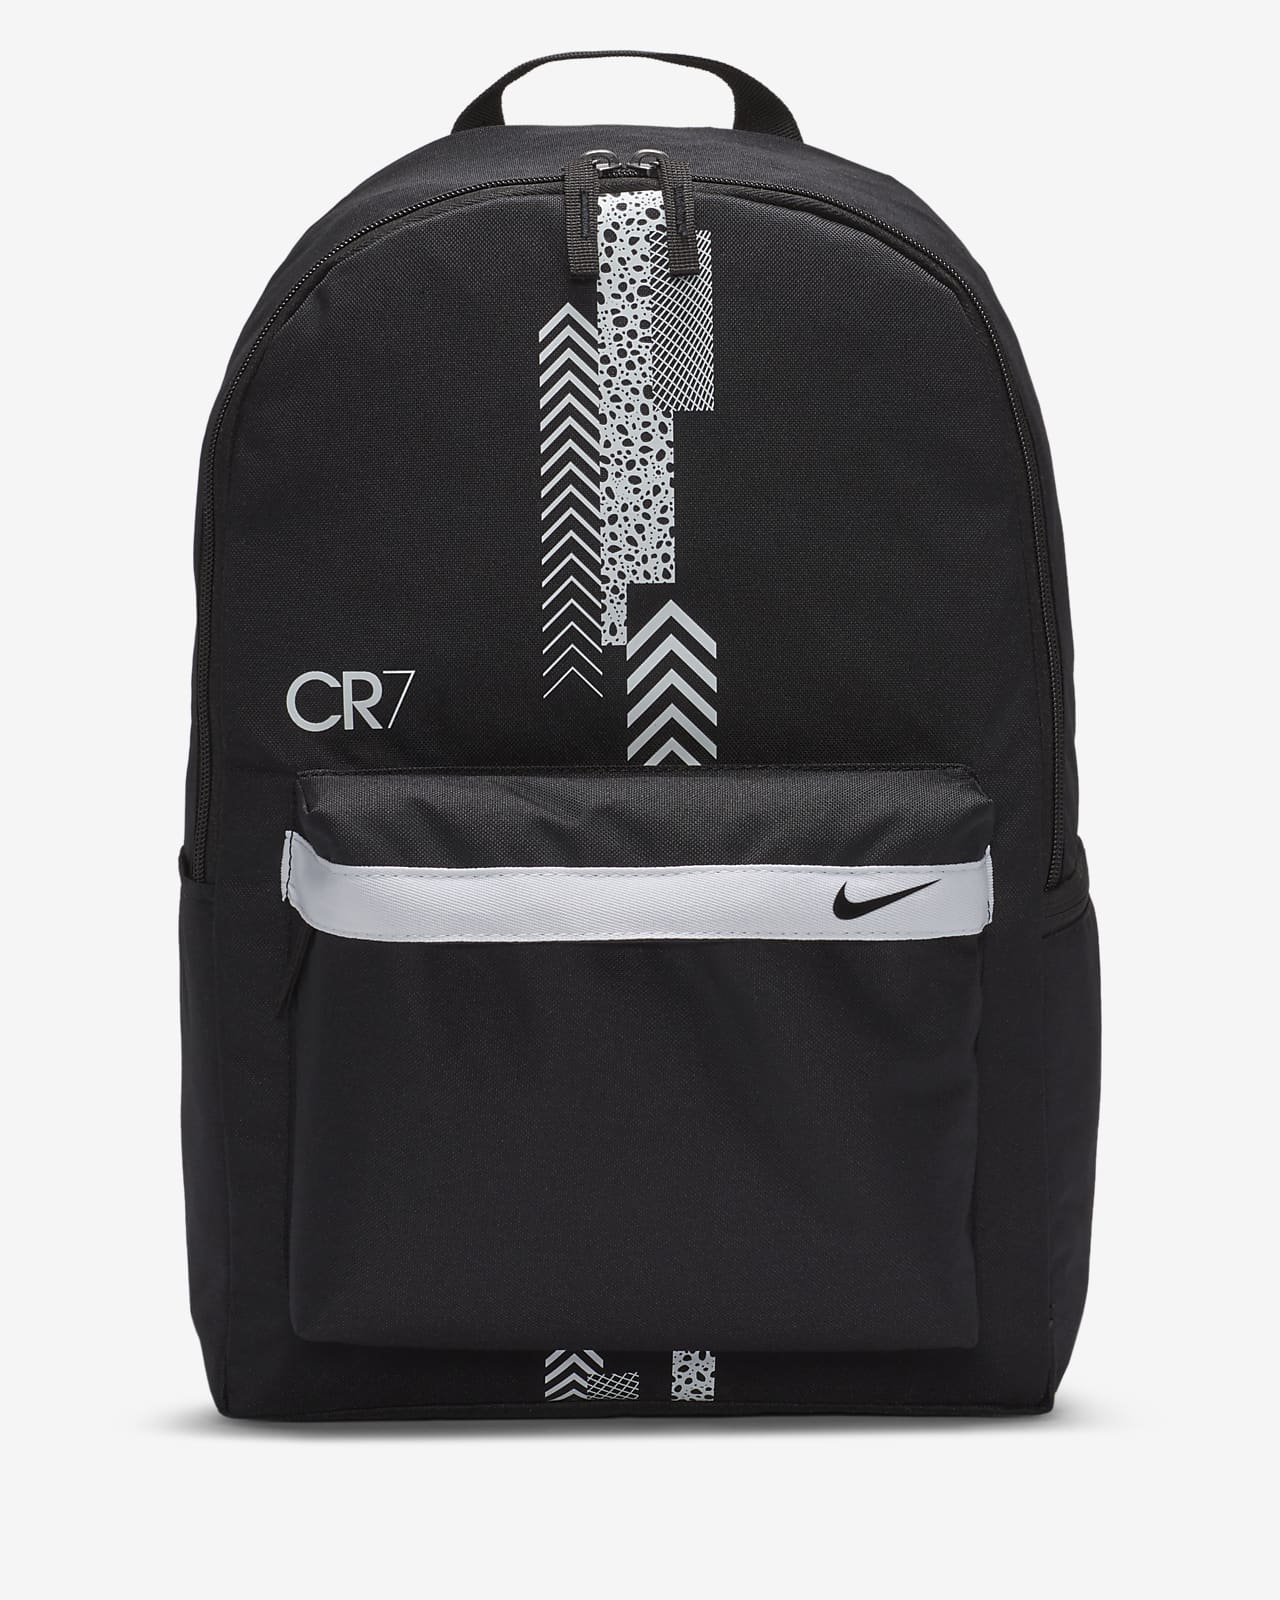 CR7 Kids' Soccer Backpack. Nike JP